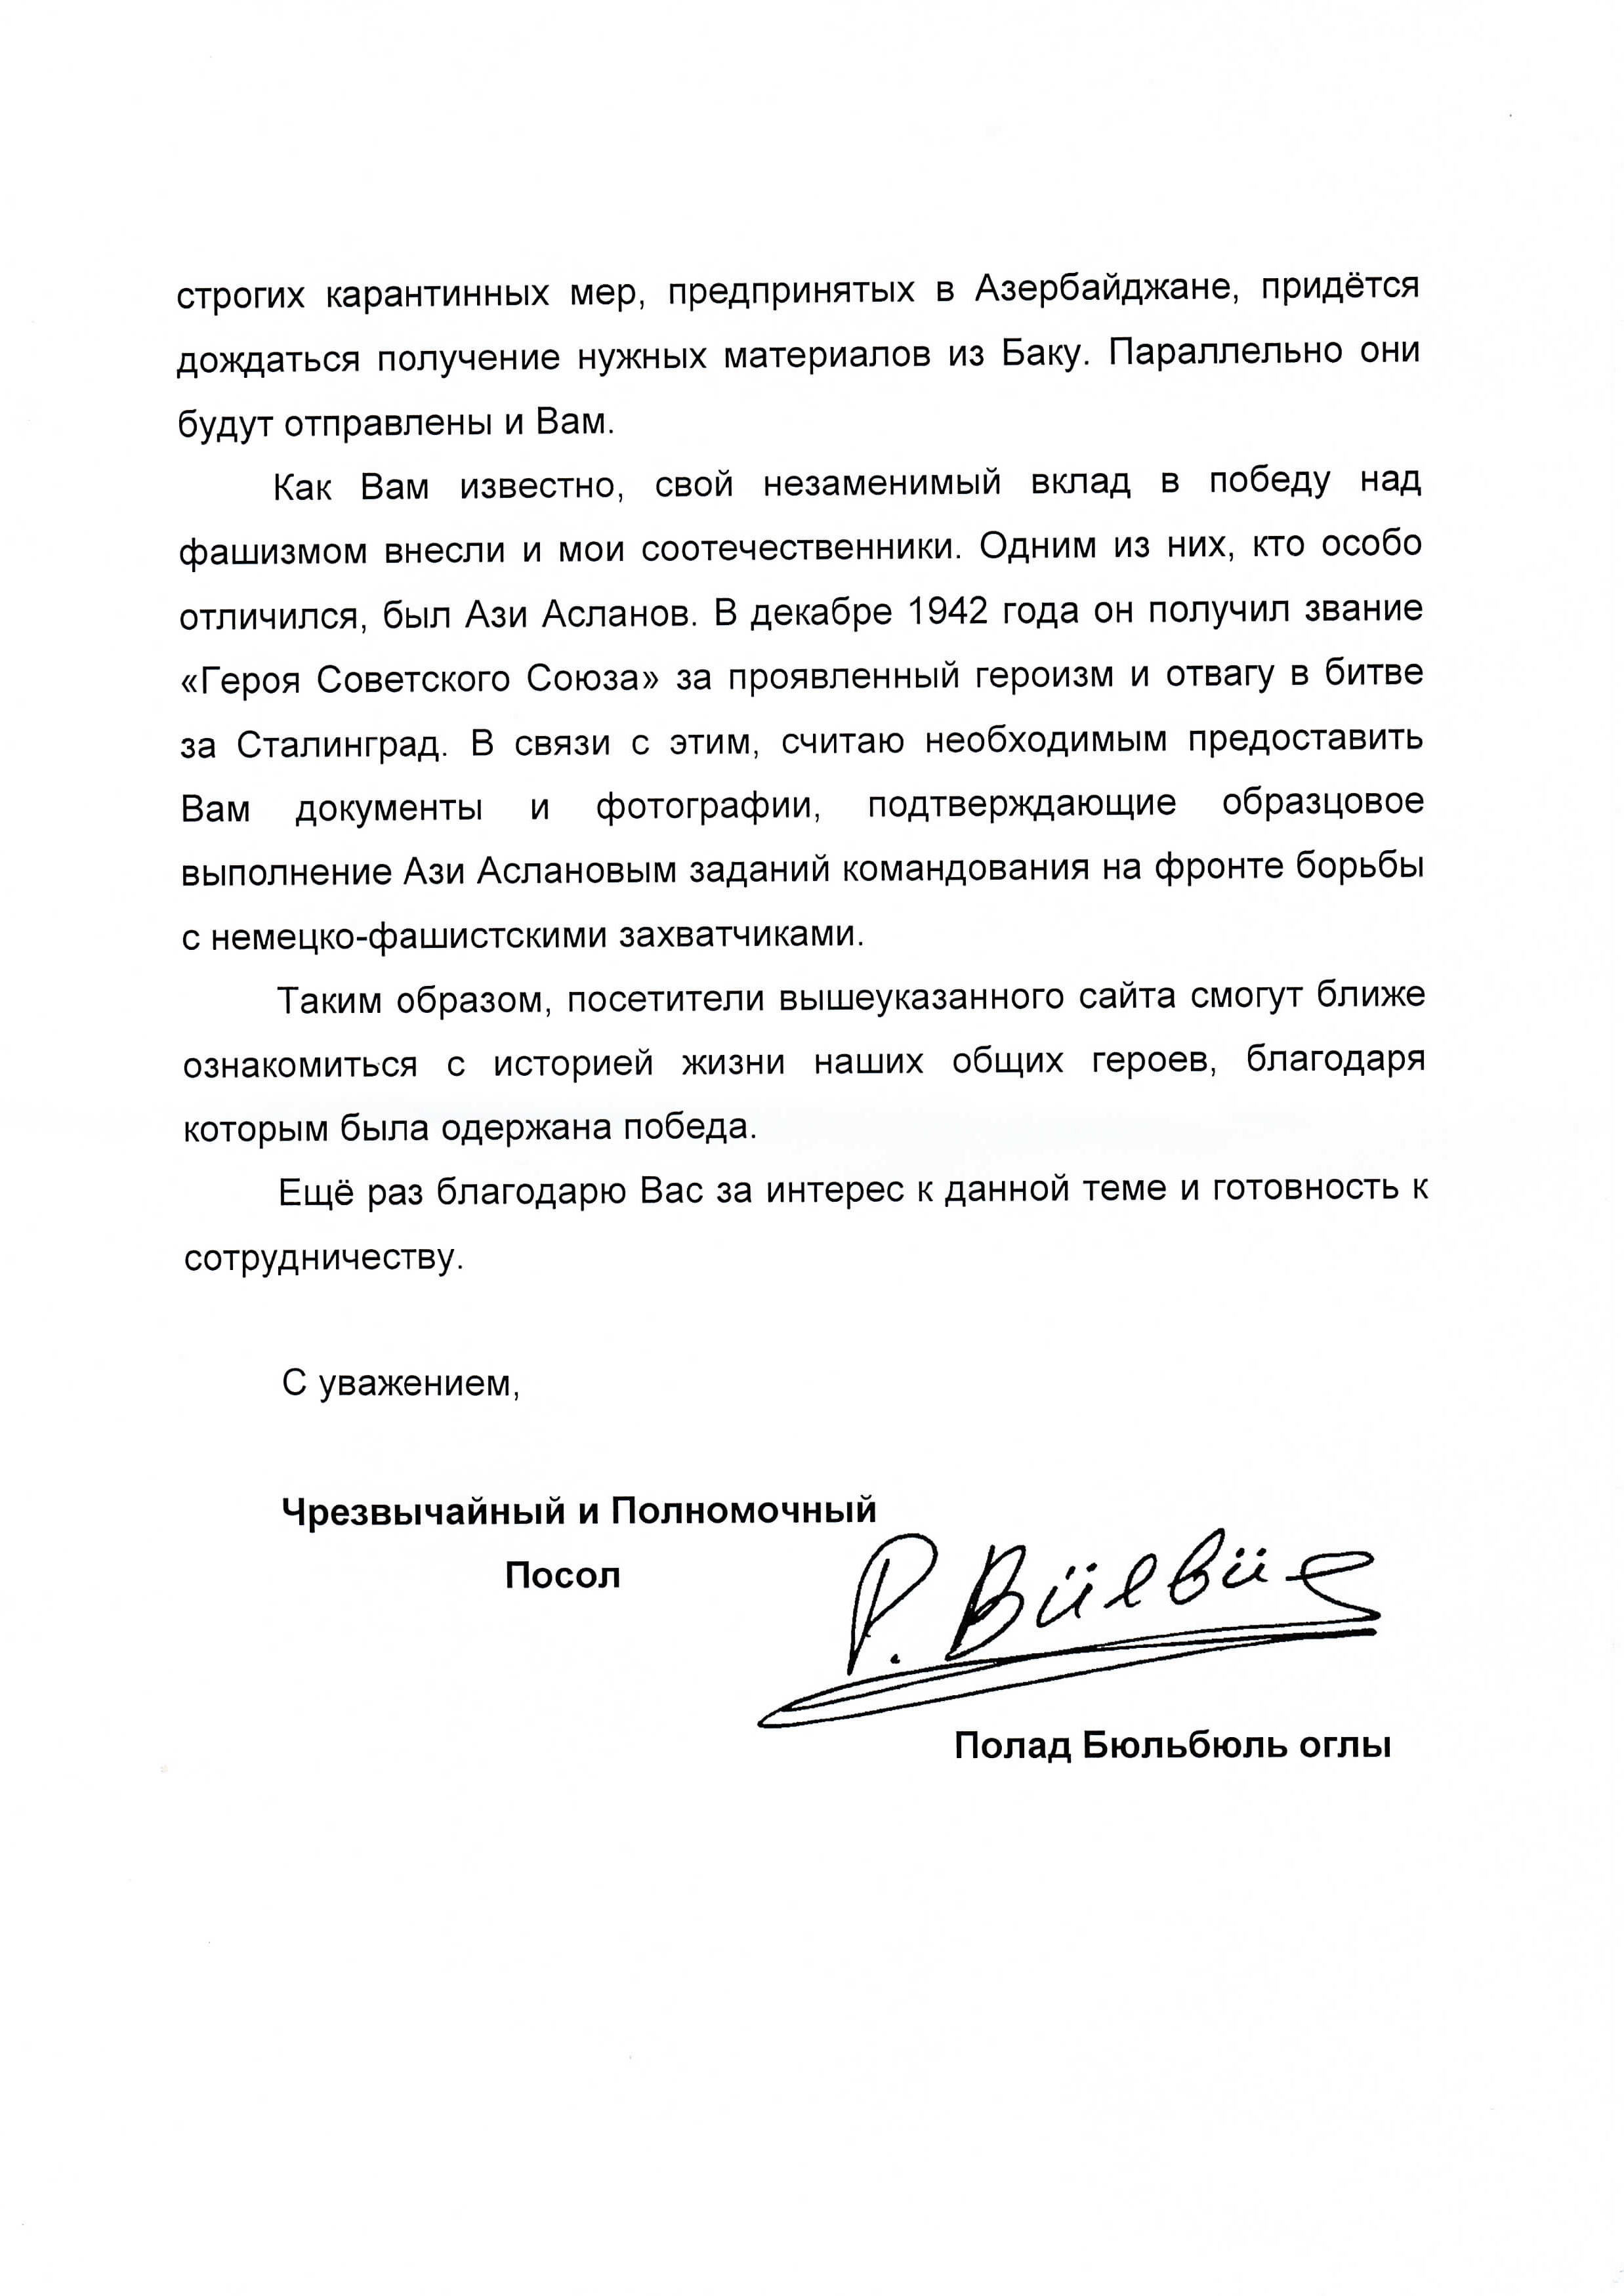 Посол Азербайджана Полад Бюльбюль оглы поблагодарил Фонд «Сталинградская битва»